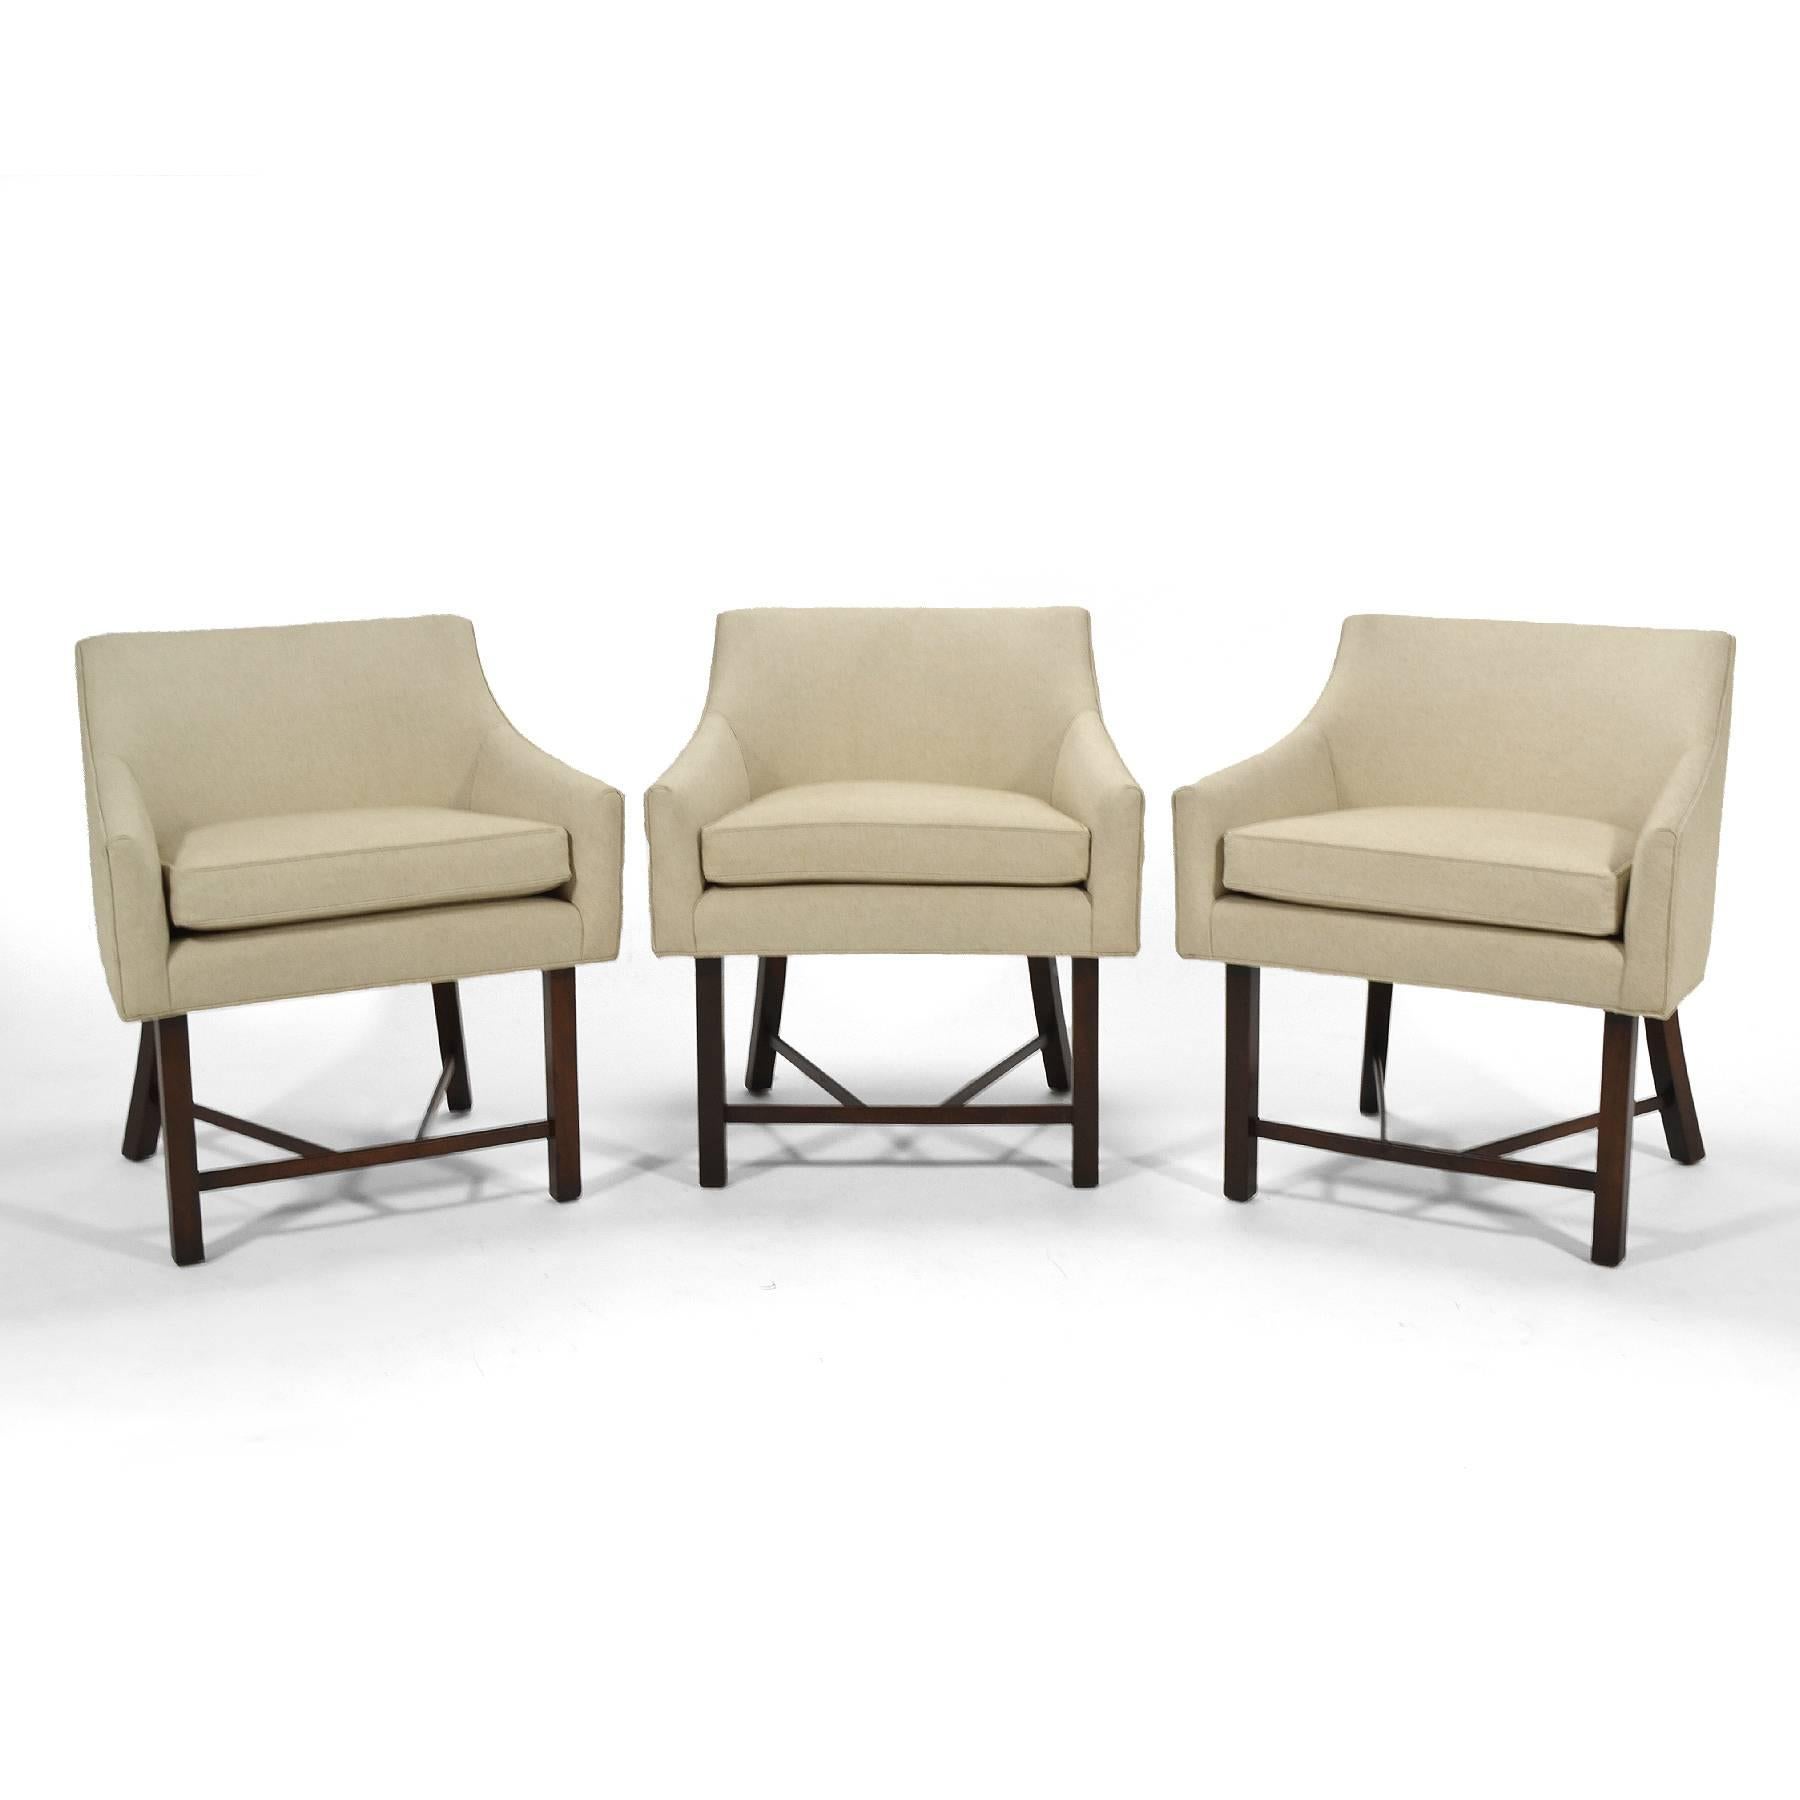 Diese leichten, geschmeidigen und eleganten Sessel von Harvey Probber sind perfekt skaliert, um als Teil einer größeren Sitzgruppe oder allein als Beistellstuhl zu dienen. Ihre Proportionen und ihr Profil machen sie aus jedem Blickwinkel schön und